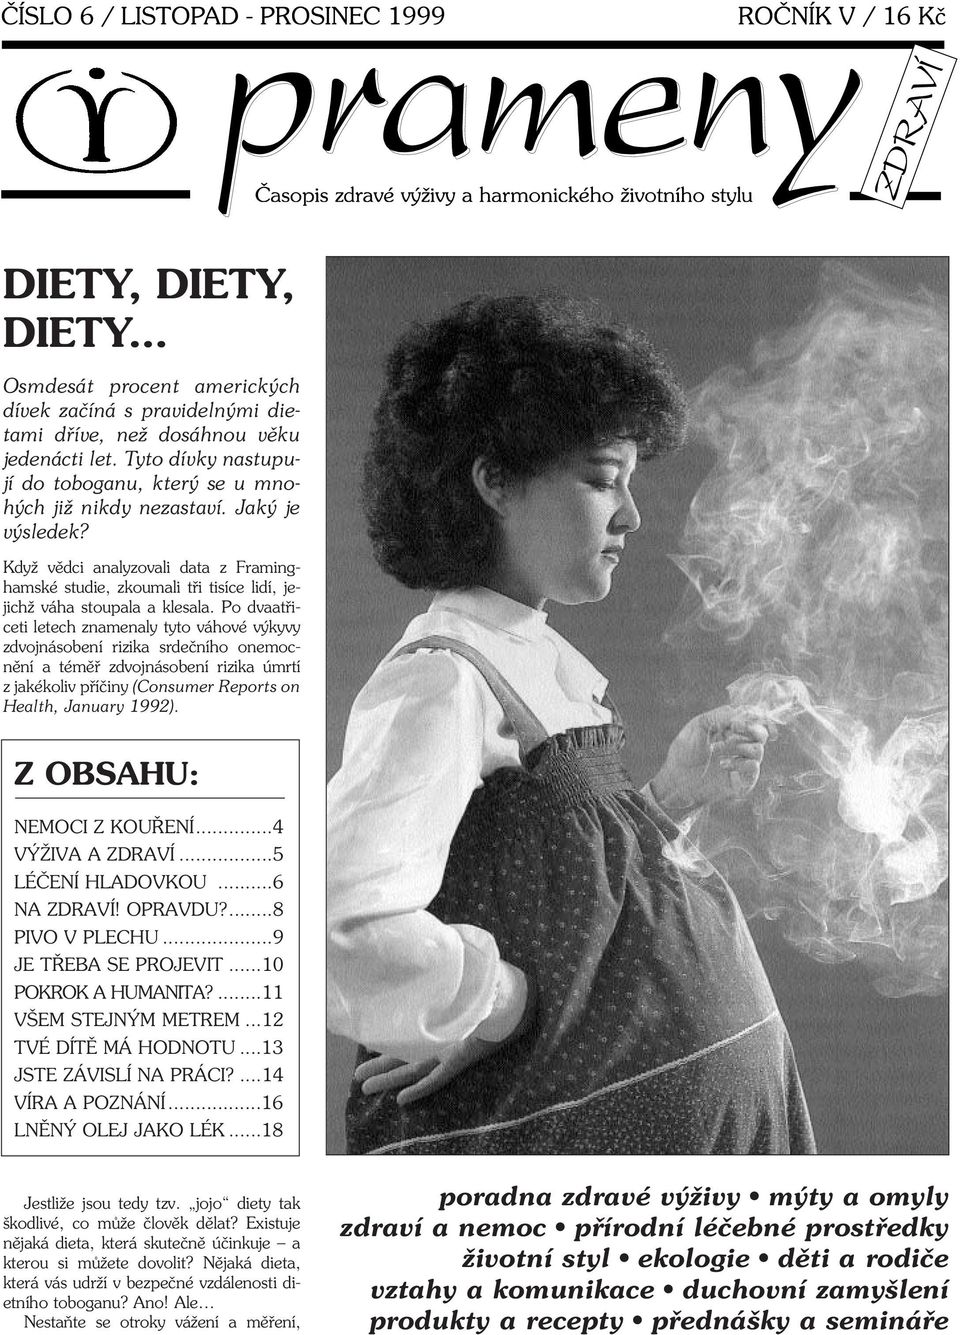 Po dvaatøiceti letech znamenaly tyto váhové výkyvy zdvojnásobení rizika srdeèního onemocnìní a témìø zdvojnásobení rizika úmrtí z jakékoliv pøíèiny (Consumer Reports on Health, January 1992).